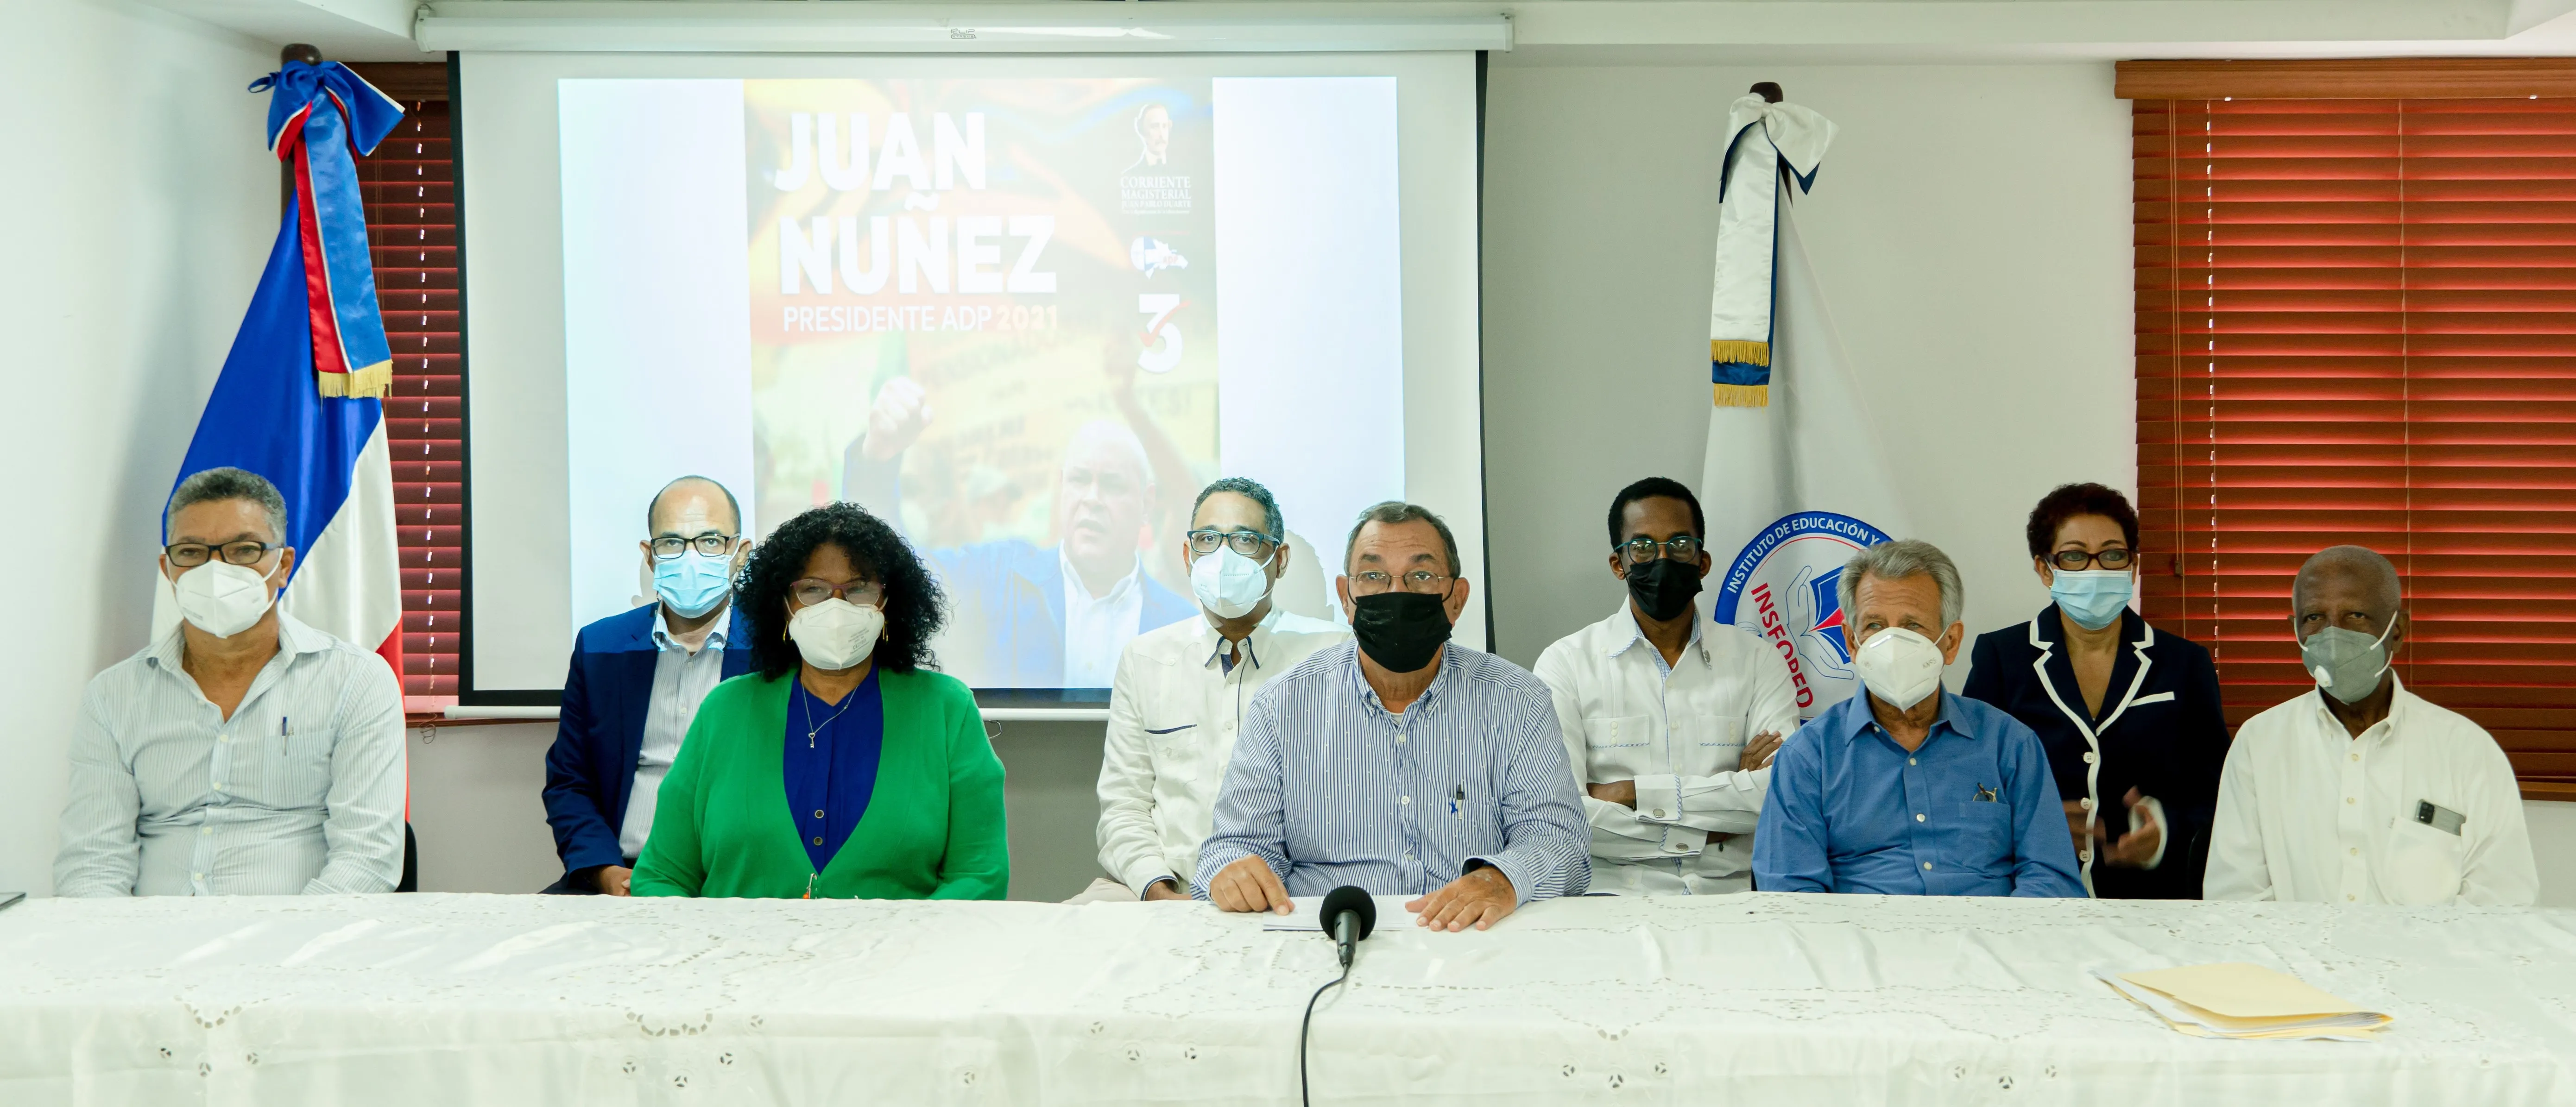 Profesor Juan Núñez recibe apoyo para la presidencia de la ADP